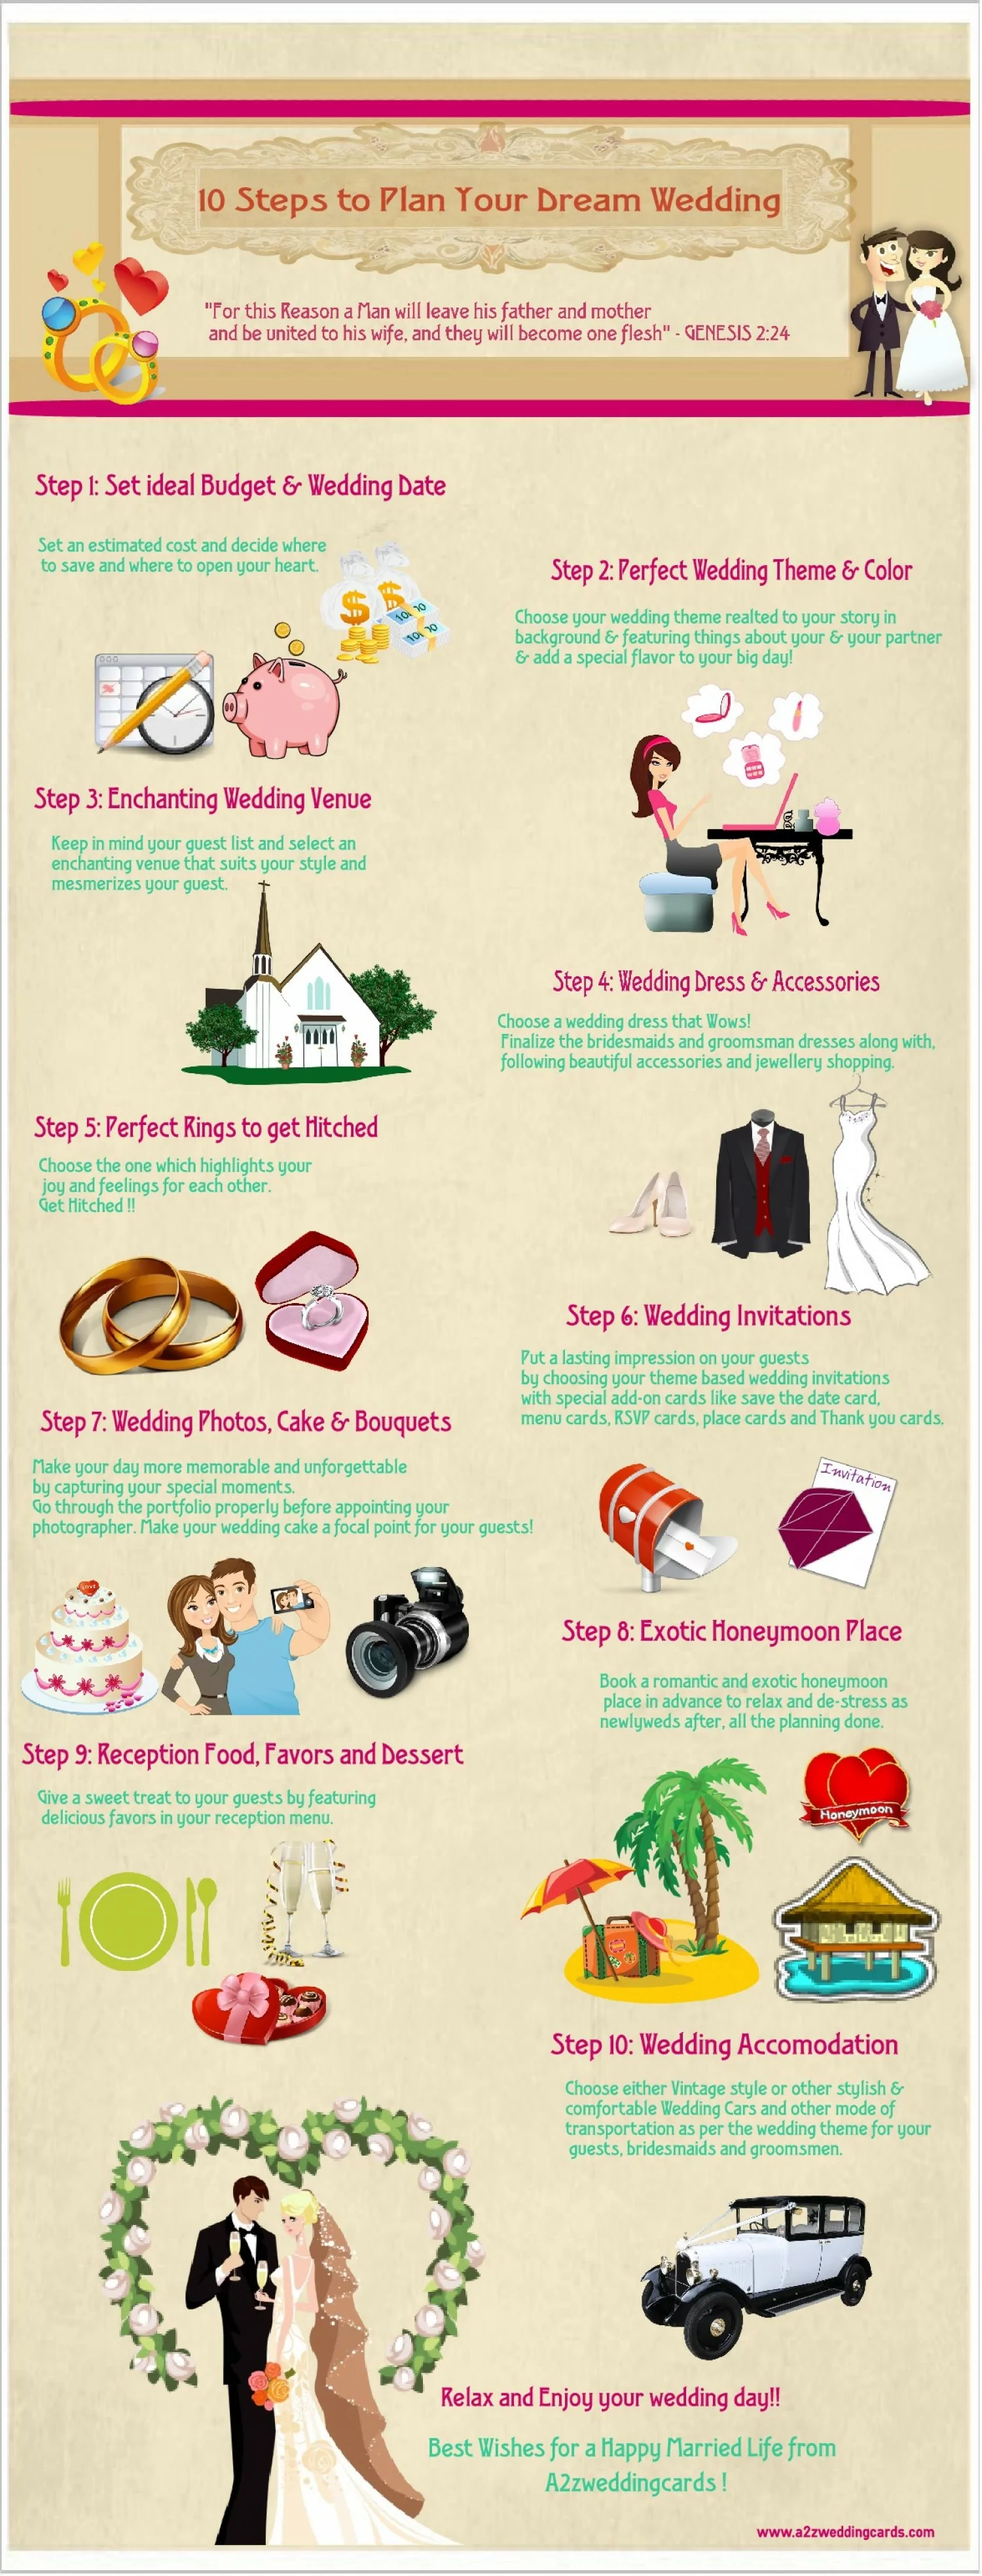 Top 10 Wedding Planning Tips